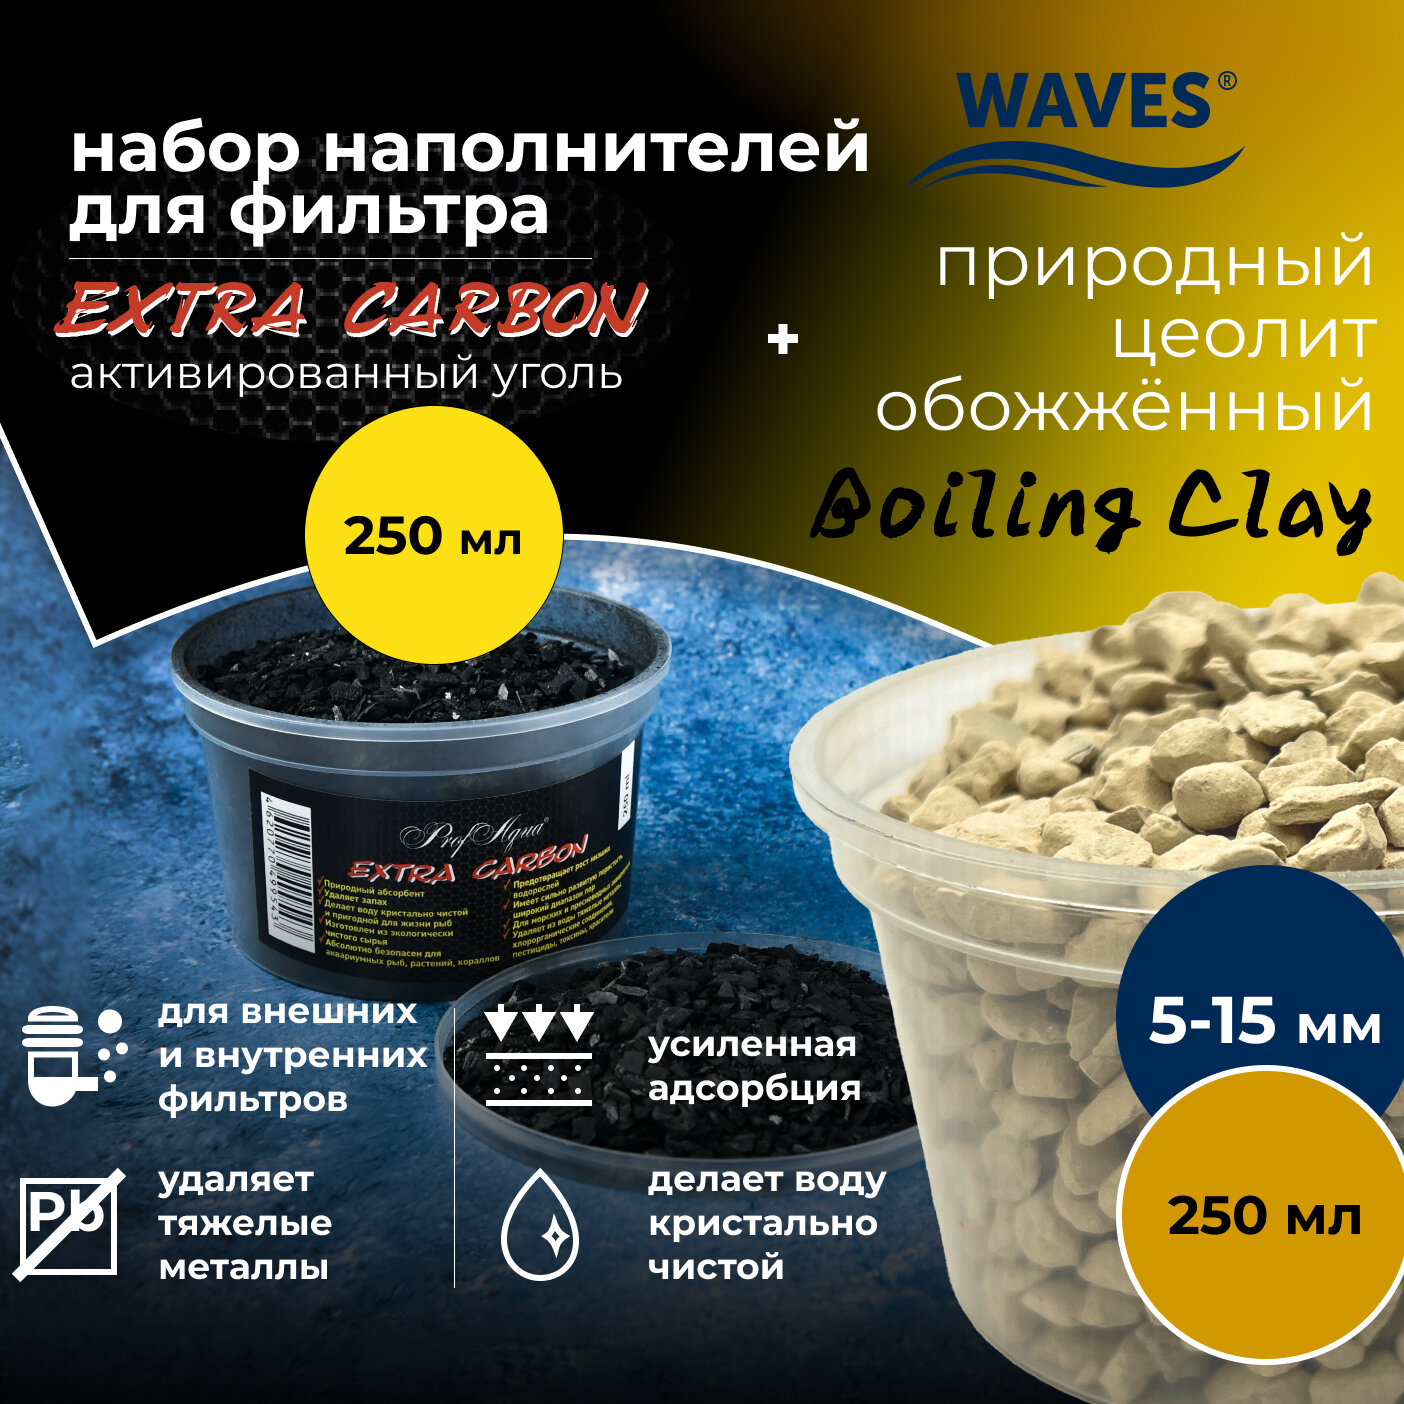 Набор WAVES для фильтрации воды в аквариуме: природный цеолит обожжённый "Boiling Clay" (250 мл, фракция: 5-15 мм) + активированный уголь Extra Carbon (250 мл)